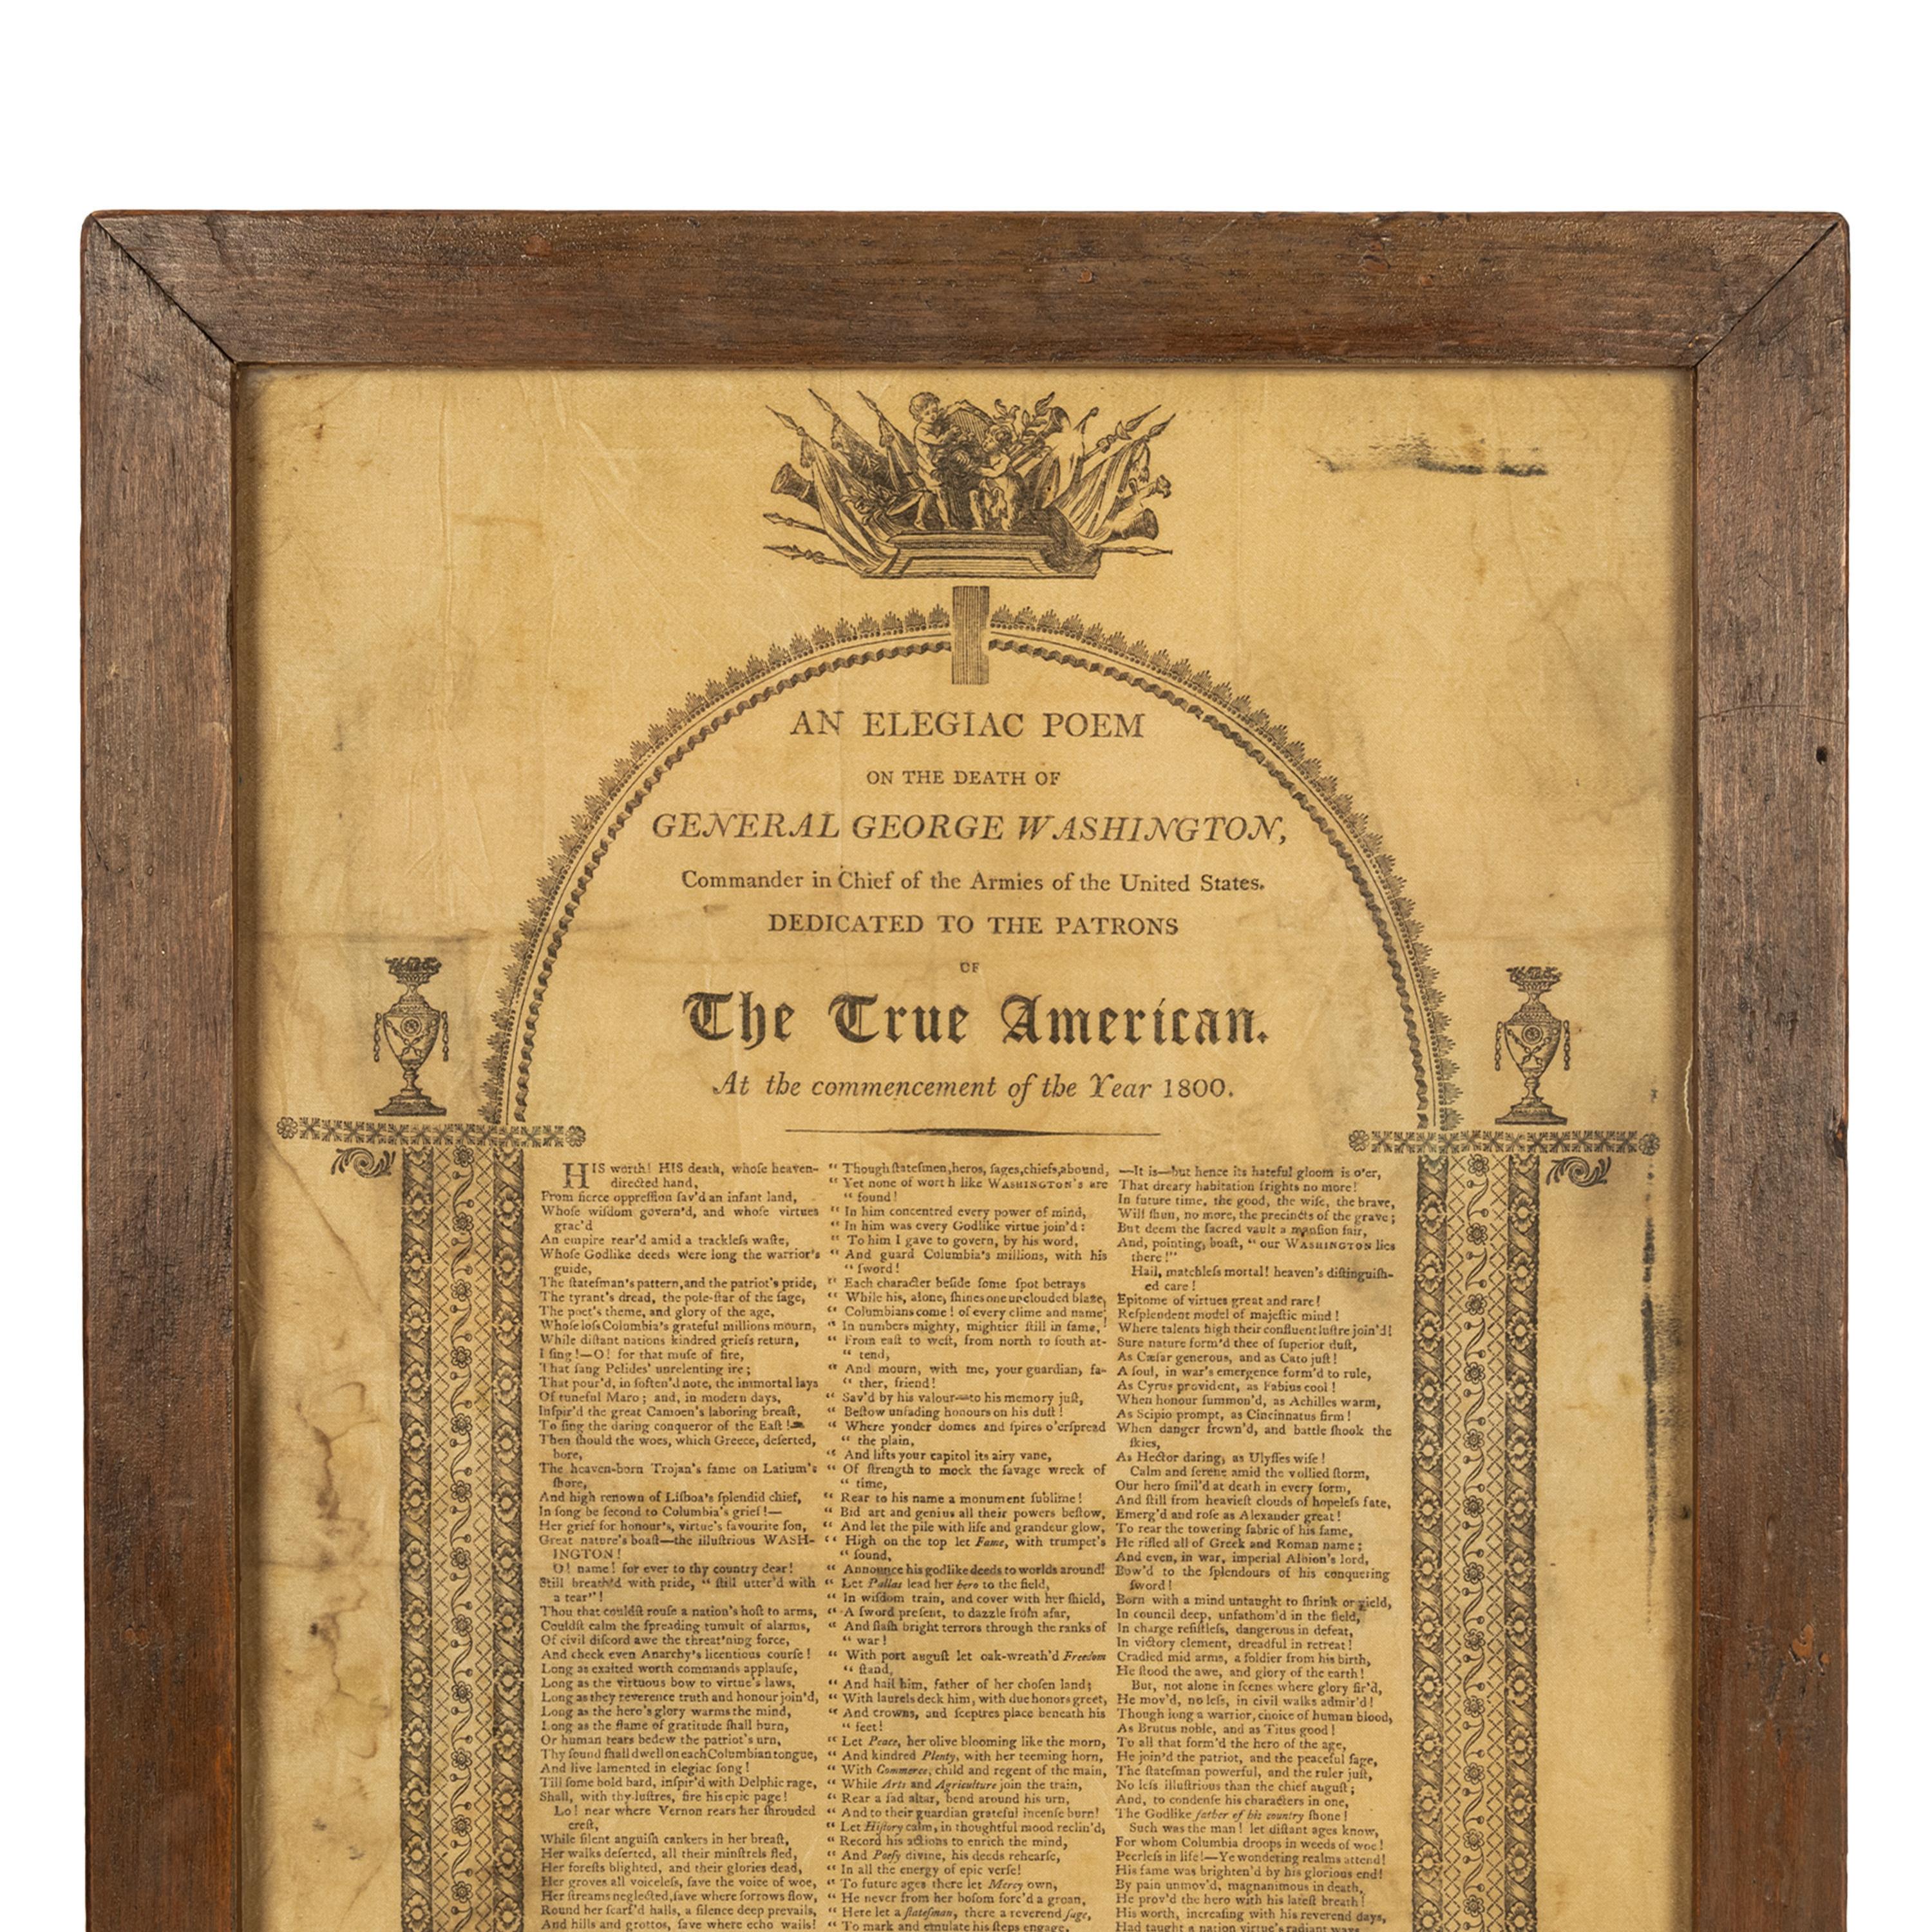 Eine wichtige & seltene antike amerikanische politische gedruckte Seidenbroschüre, eine Elegie auf den Tod von Präsident George Washington, datiert 1800.

Ein Gedicht über den Tod von  Präsident George Washington 1. Januar 1800, siehe 